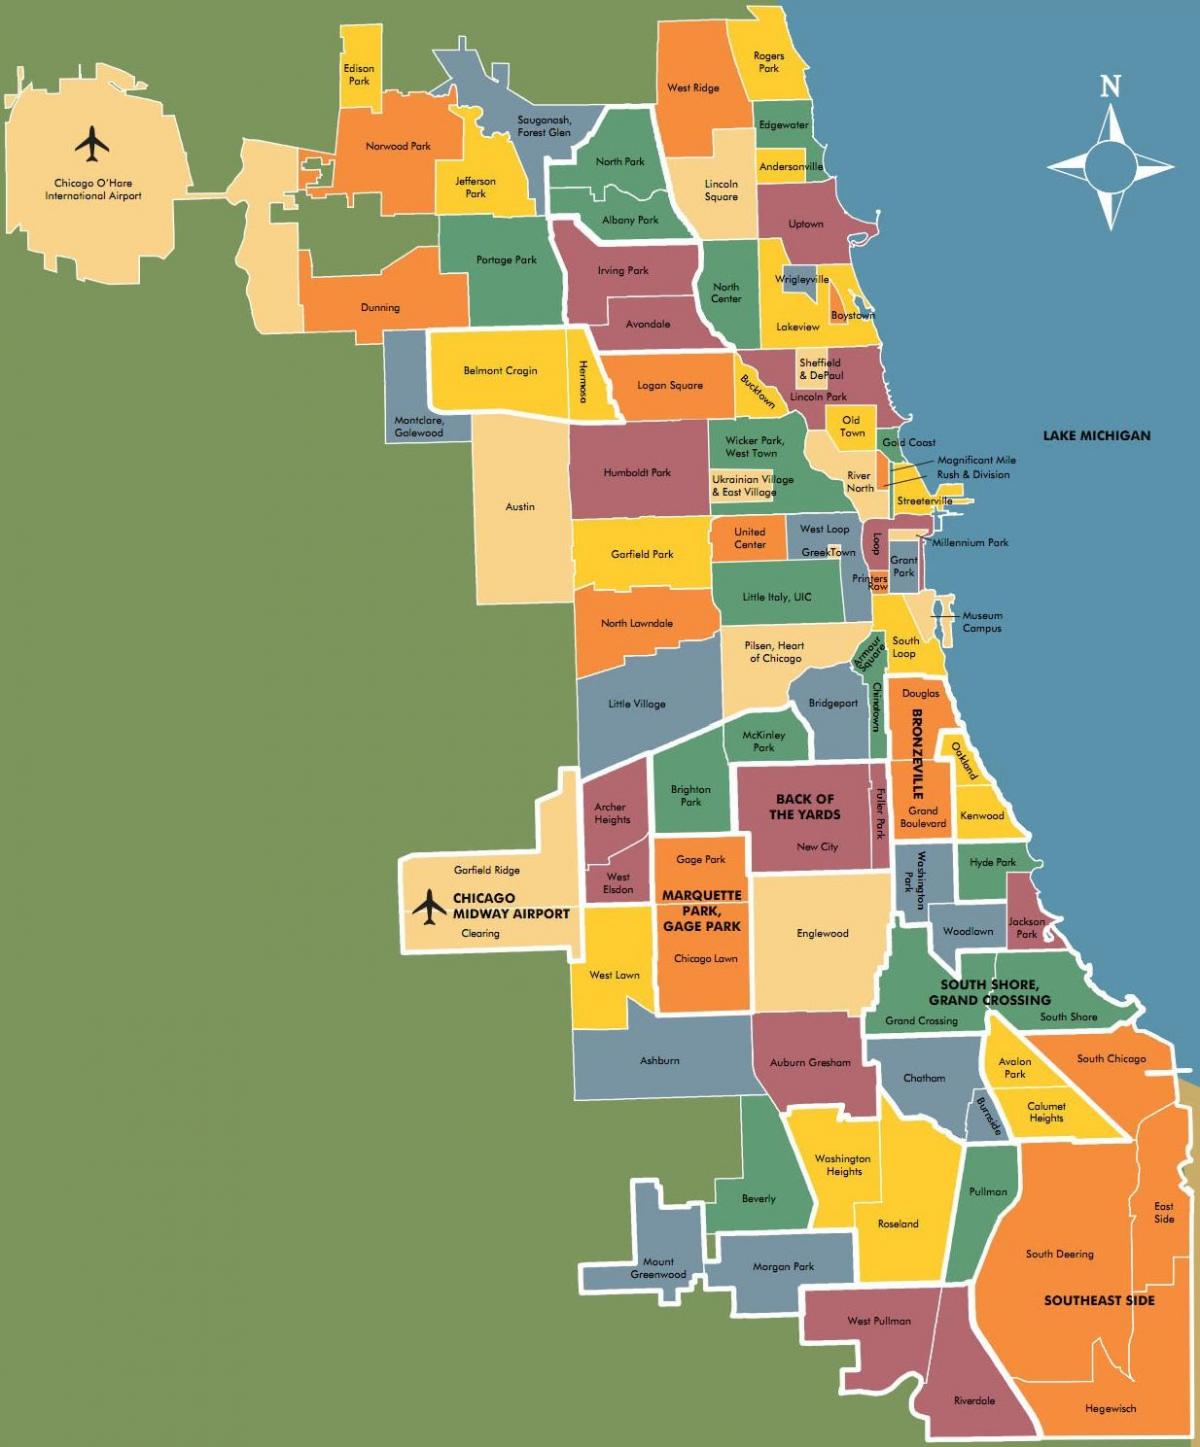 kort over bydele i Chicago